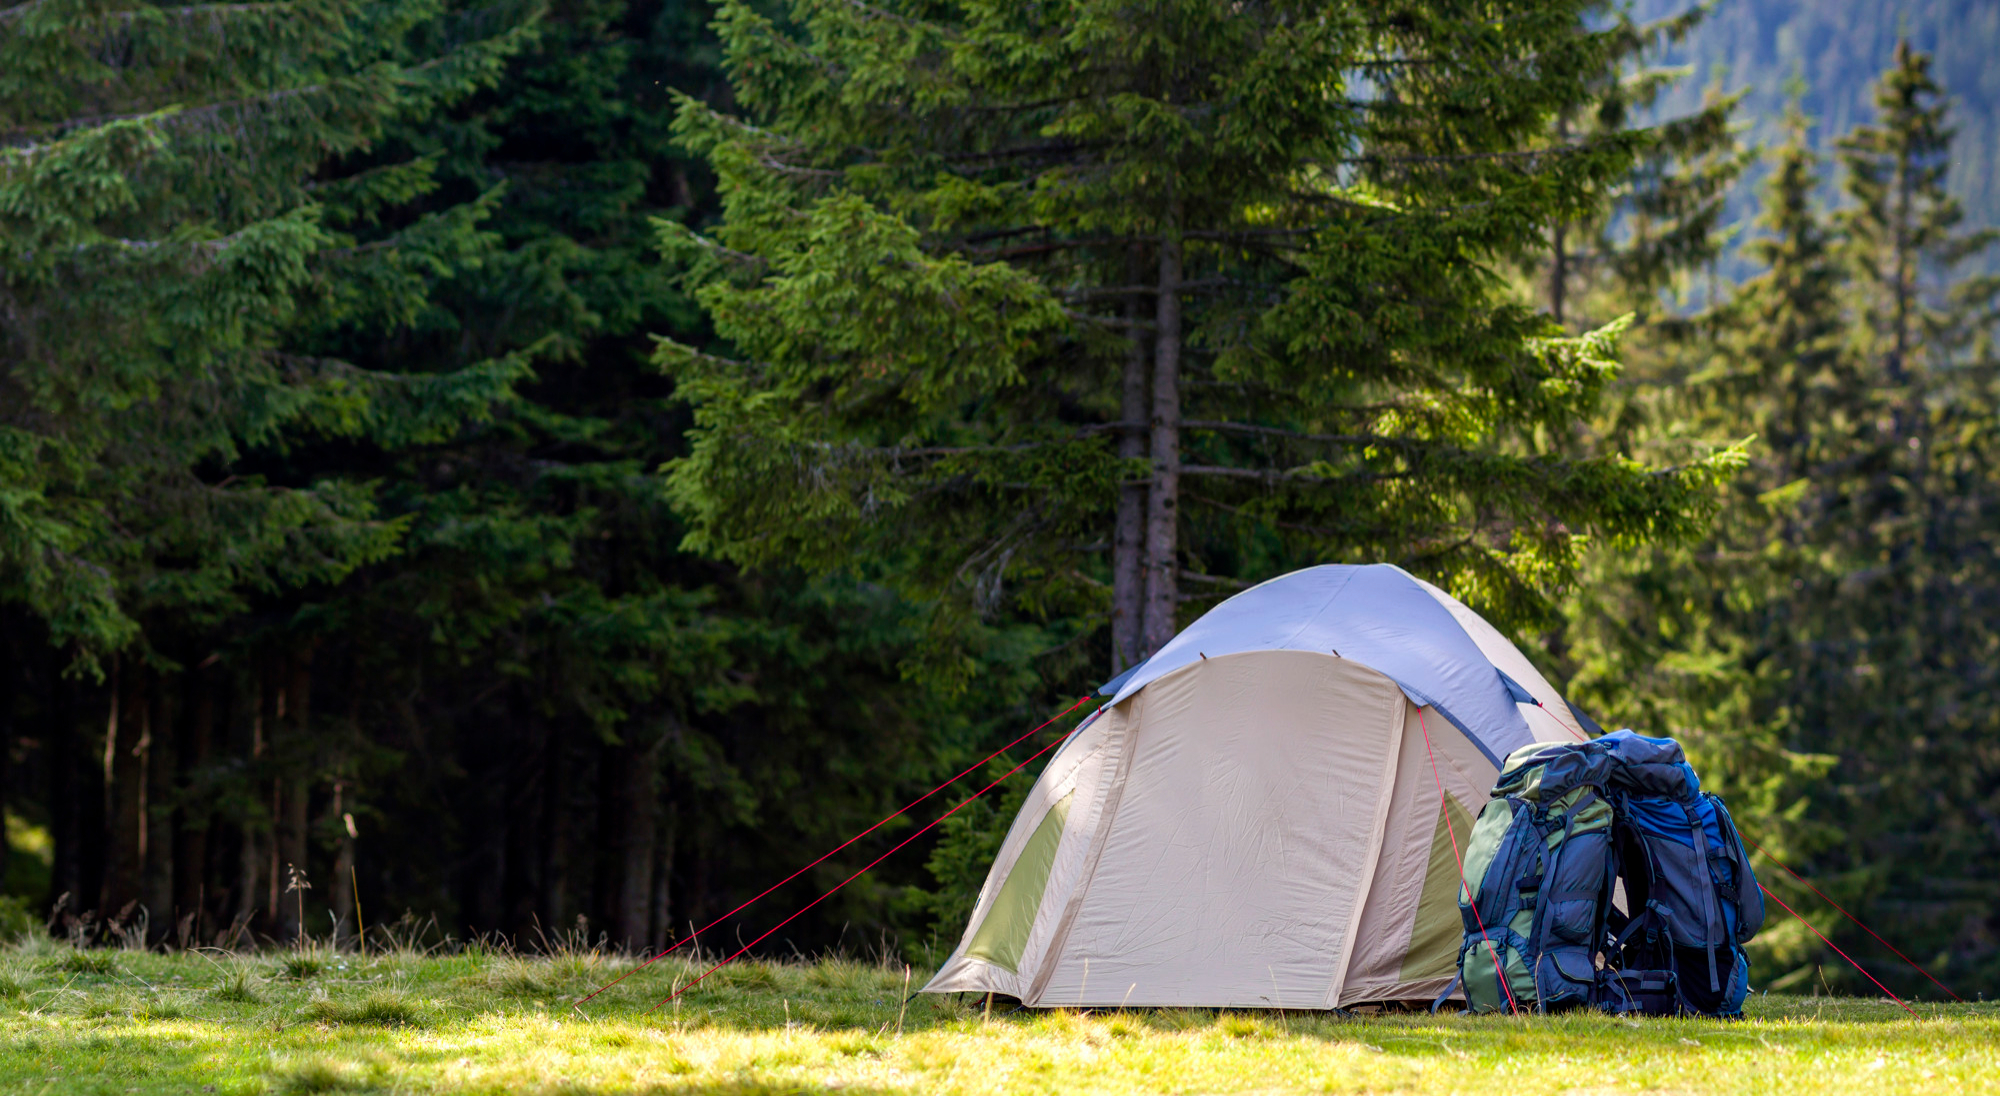 “五一”假期露营相关产品预订量是去年3倍 营地周边酒店预订量同比涨幅达145%